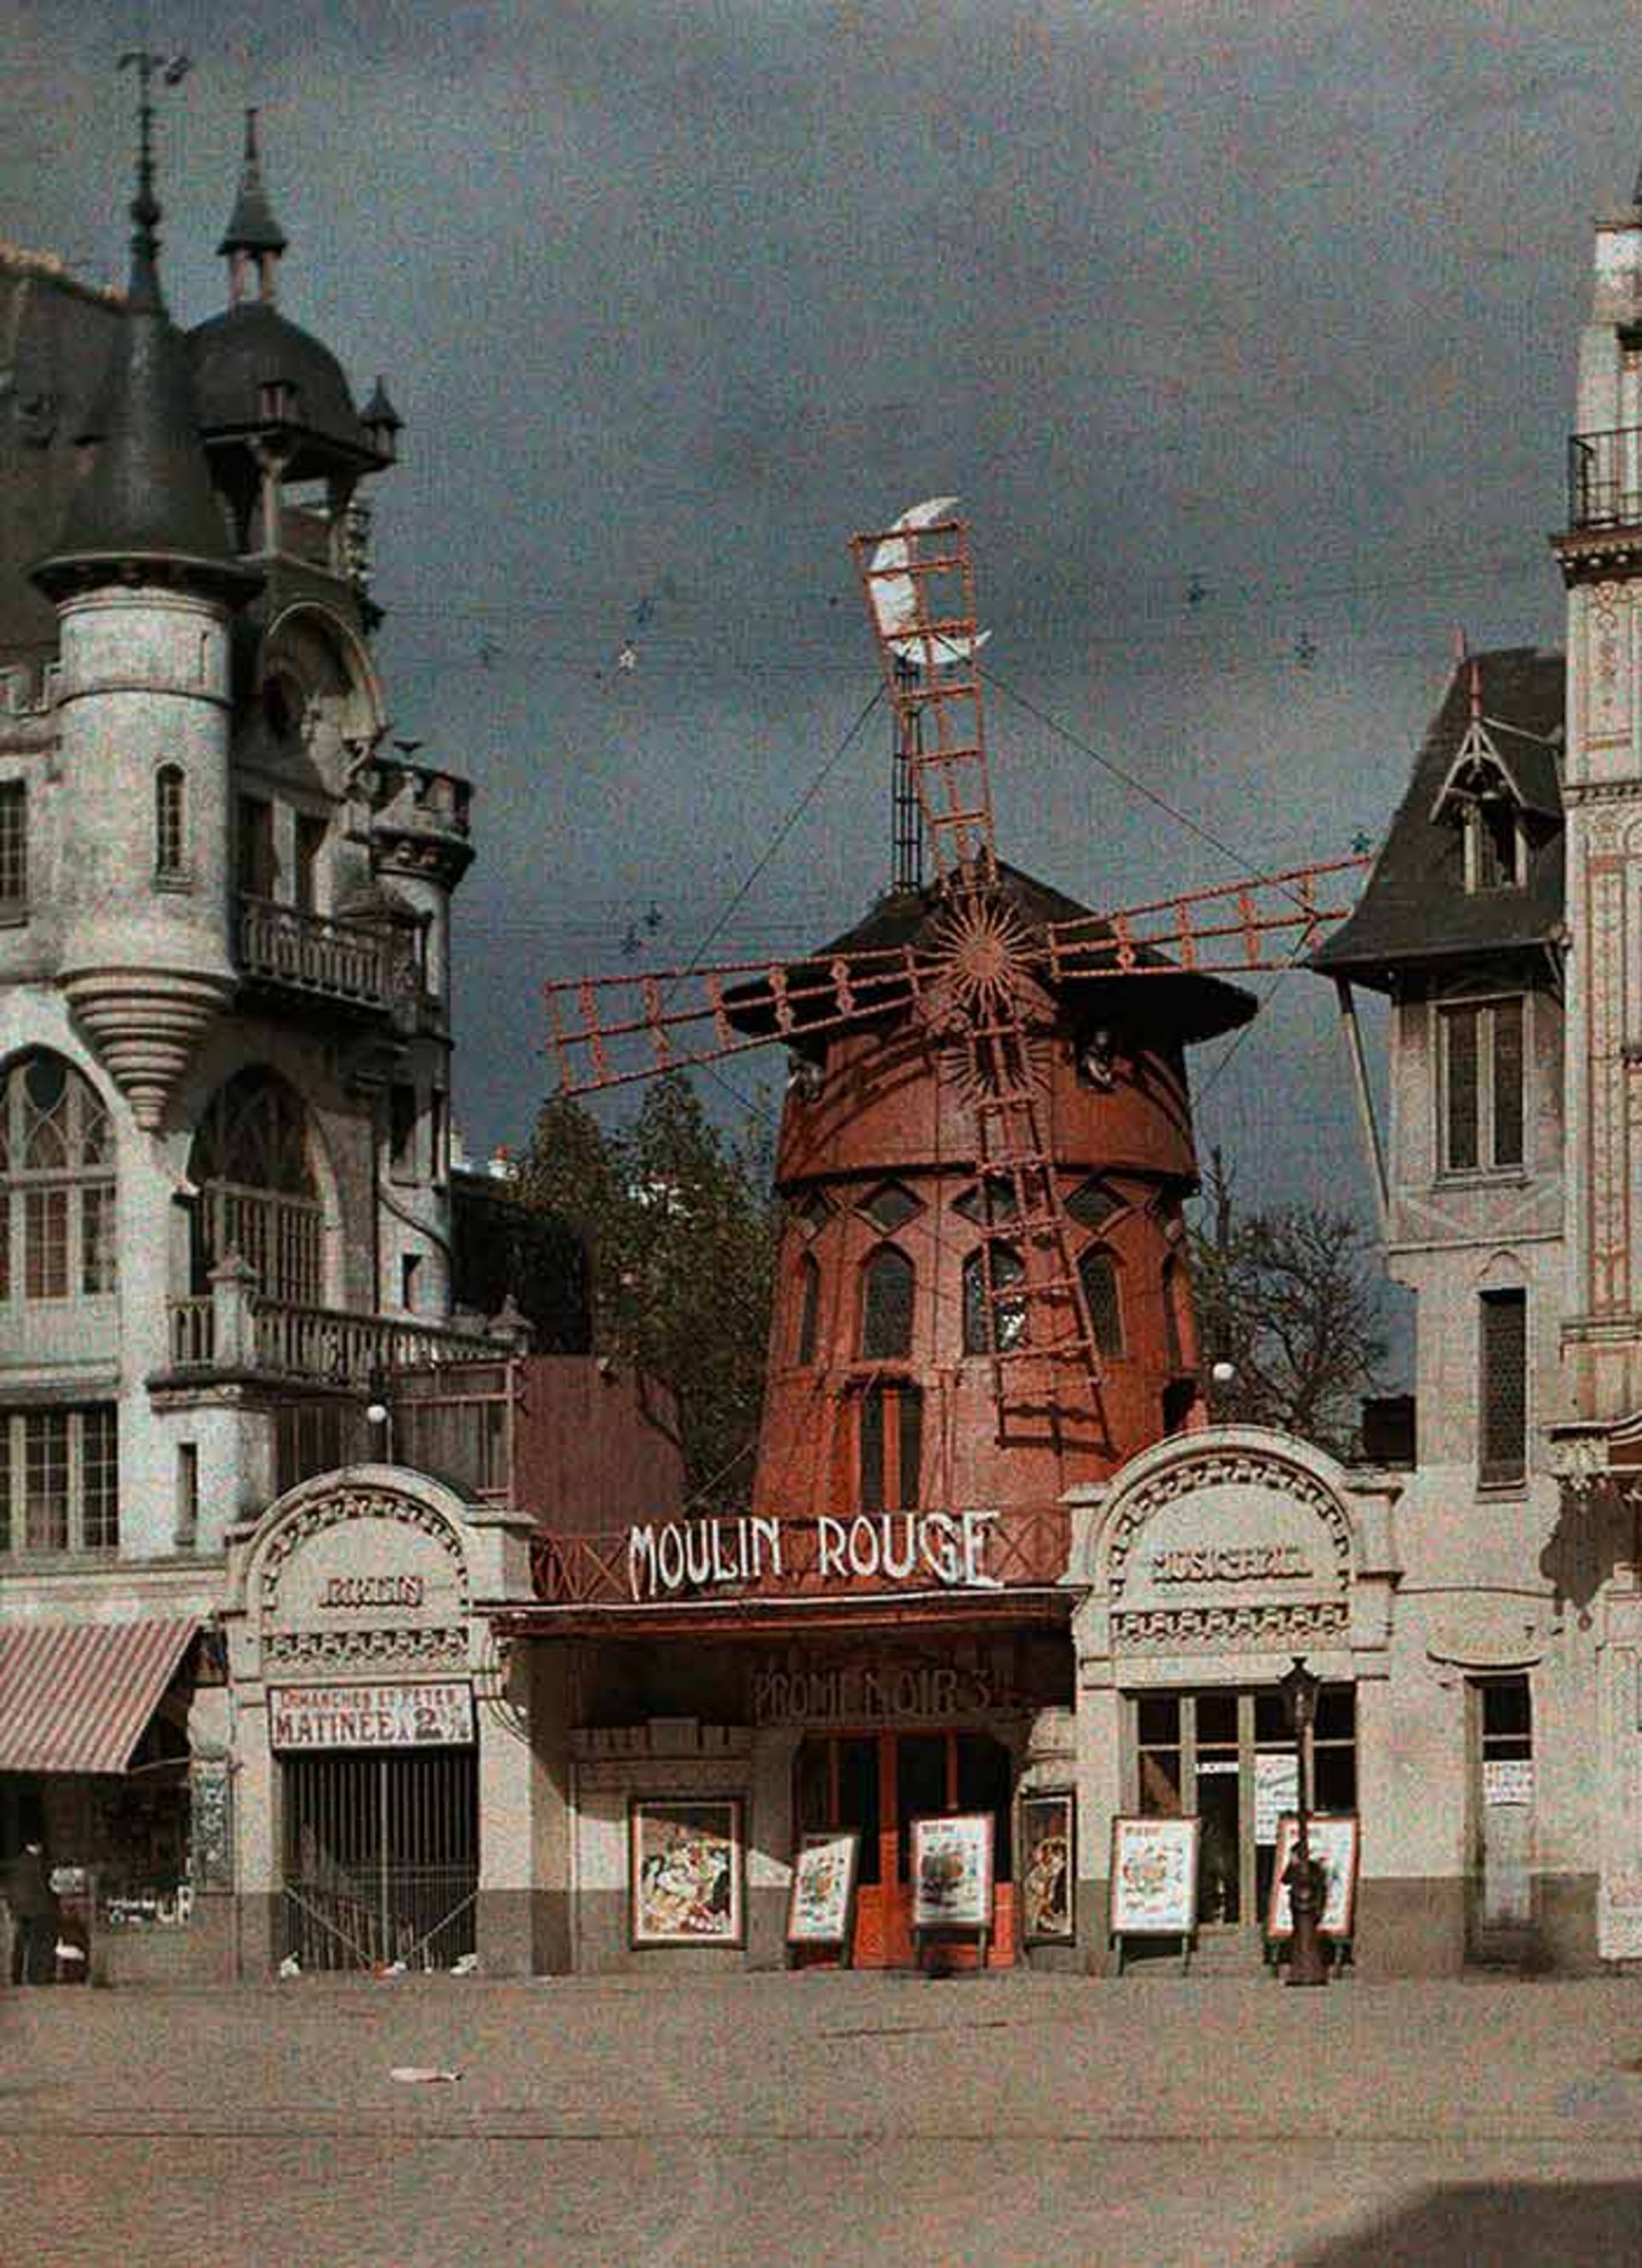 چشم انداز متفاوت پاریس در قالب تصاویری نادر و قدیمی